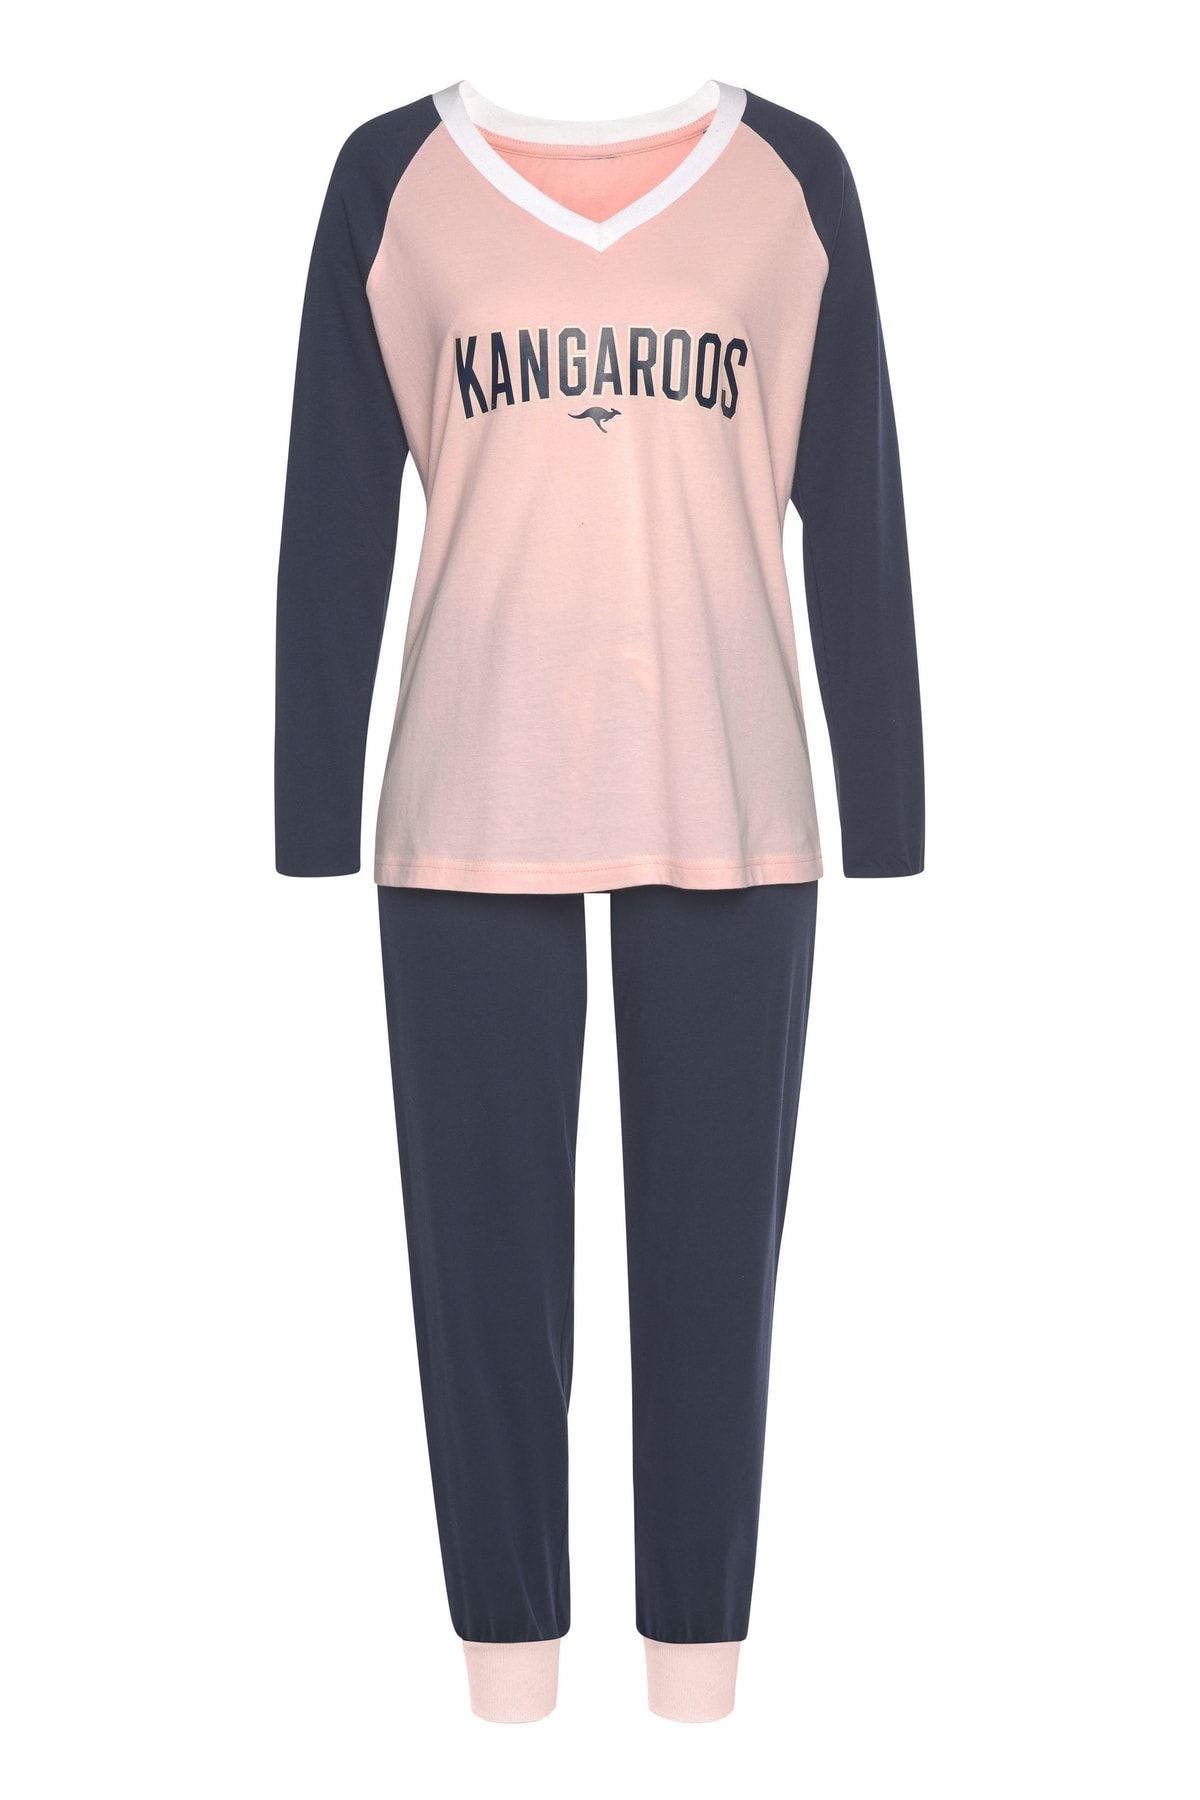 Trendyol - Plain Pink - Set - Pajama Kangaroos